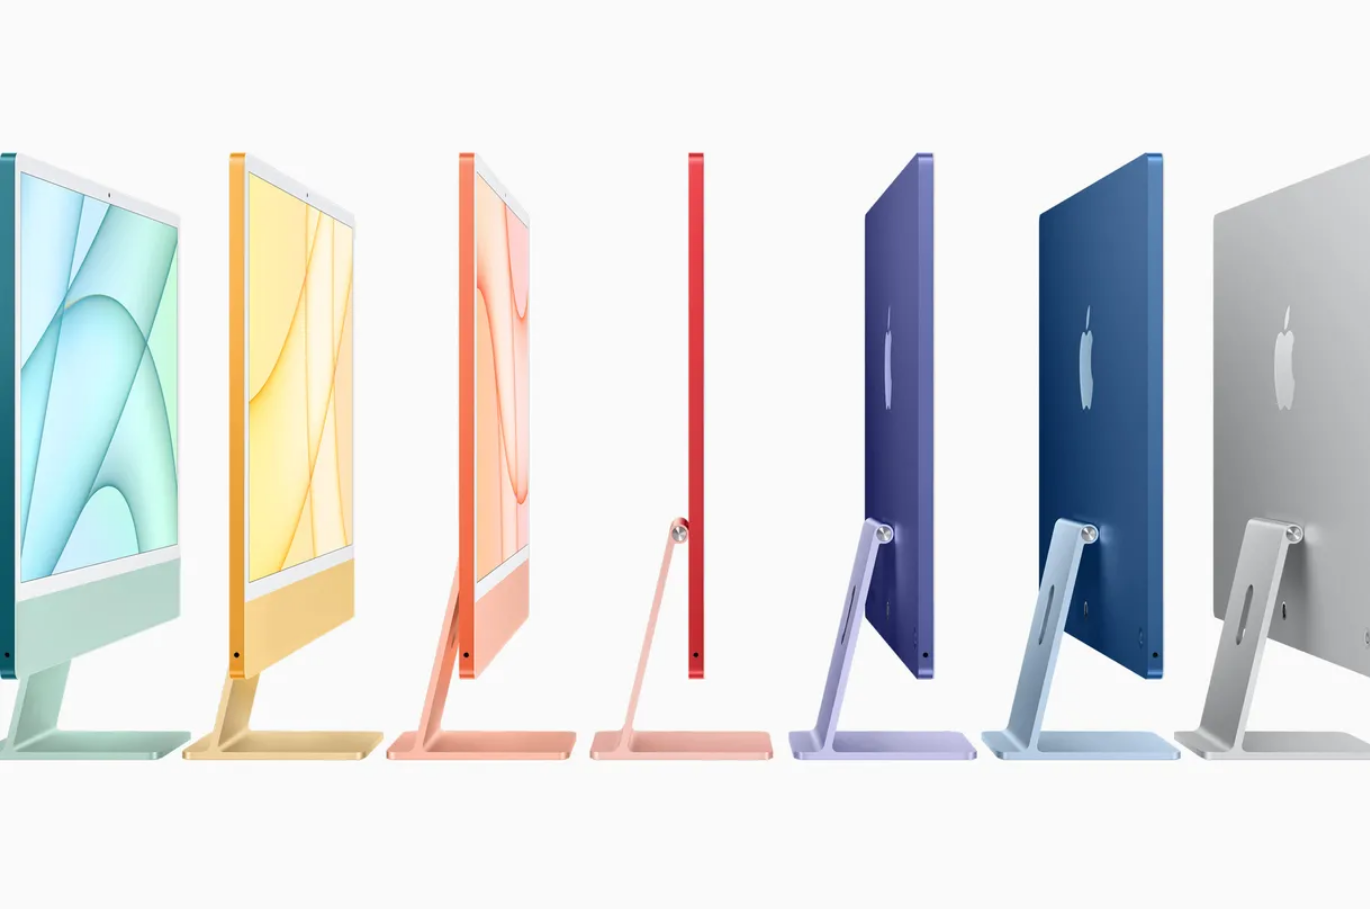 iMac 2021 chega com processador M1 e diversas opções de cores